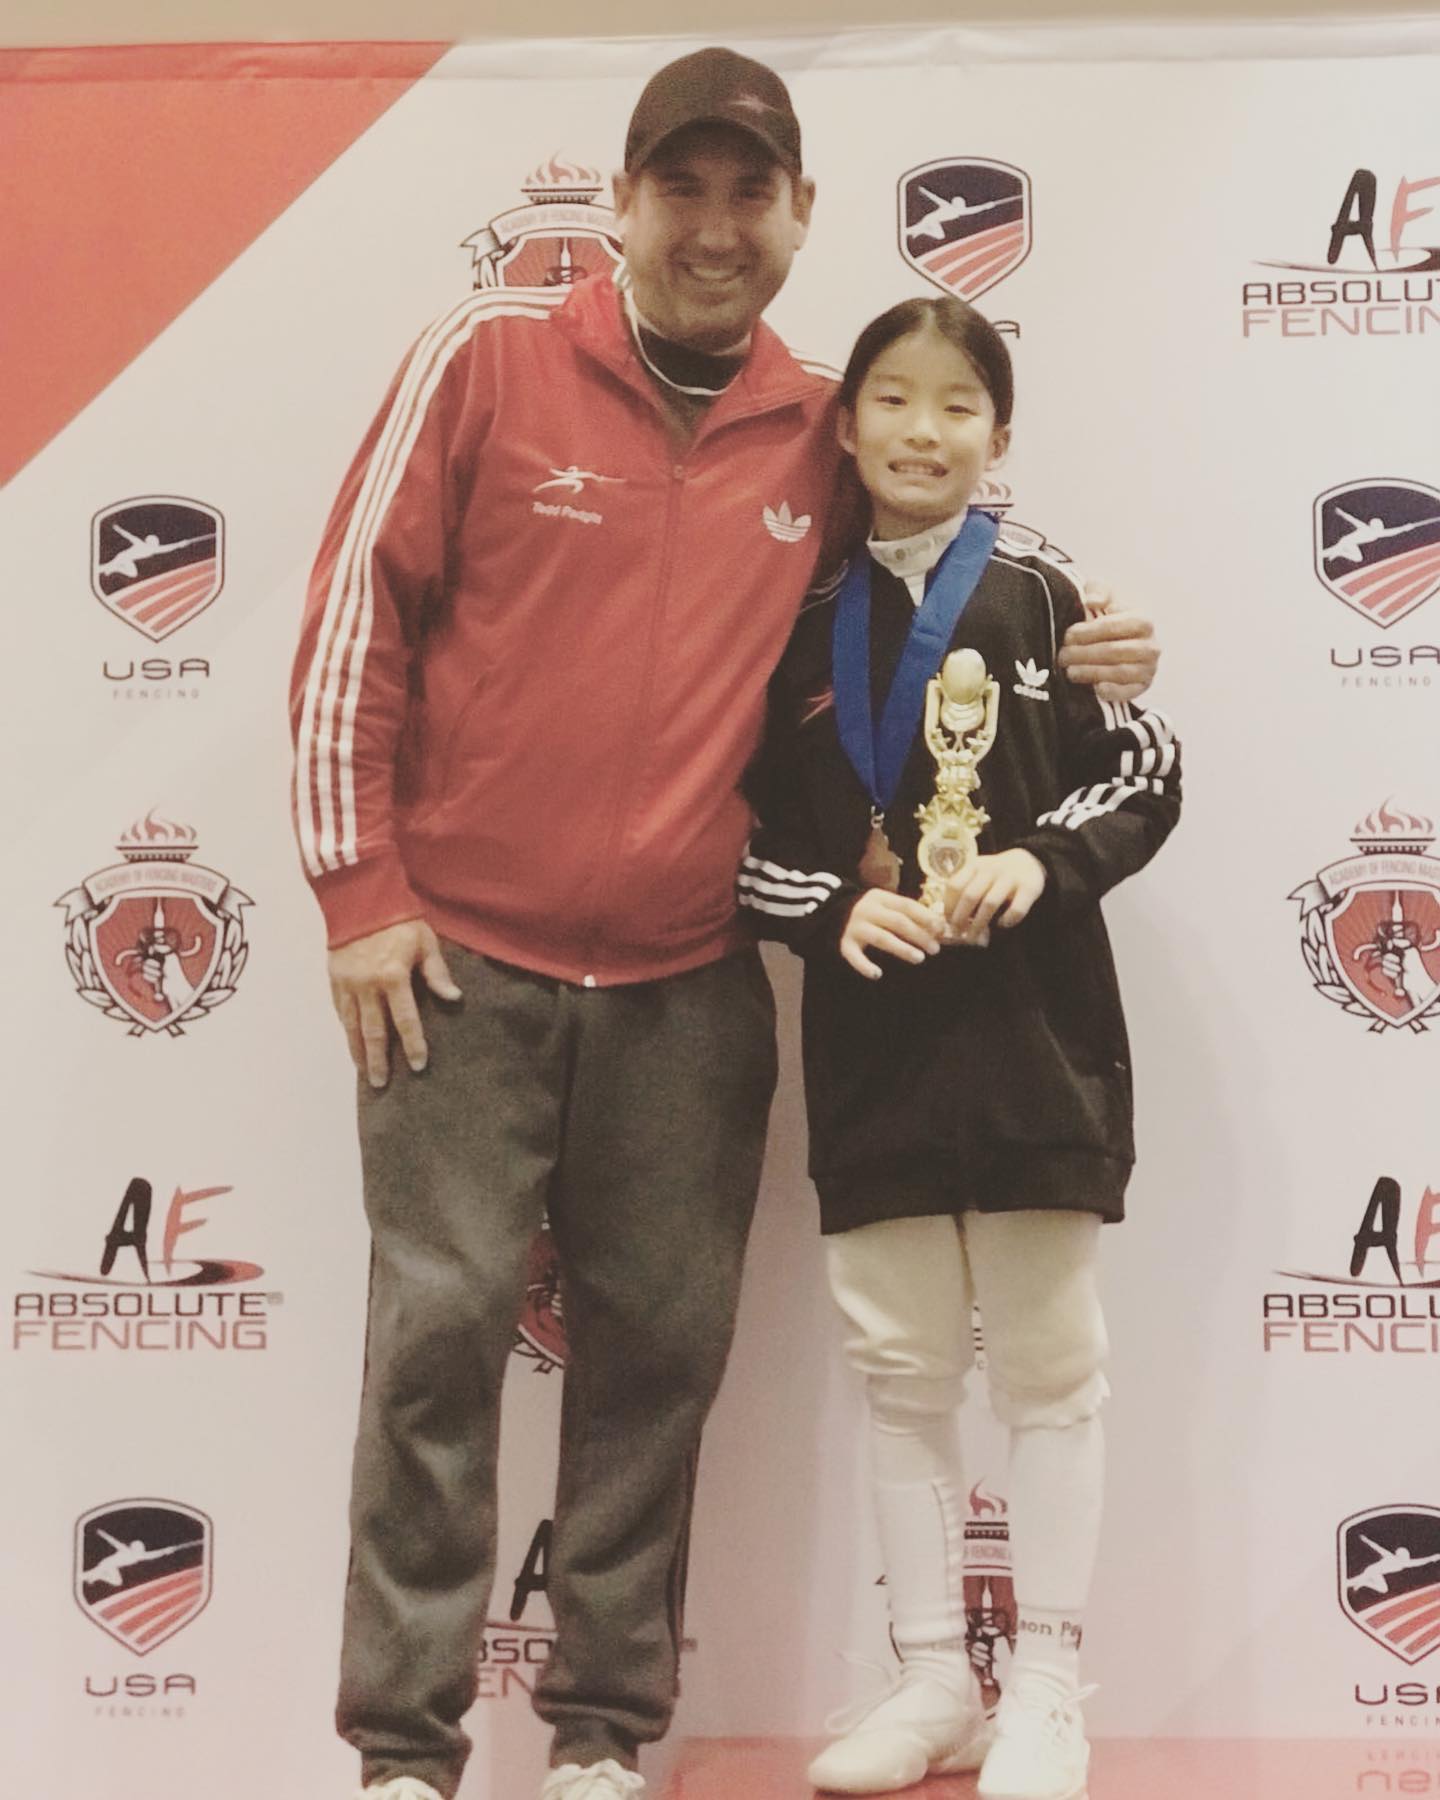 Sophie Duan national gold medalist! Womens Foil at AFM Super Regional SYC. #fencing #foilfencing #foil
#foilfencing #foilfencer
#foilfencingcompetition #fencingclub
#gold #medal #medalist #teamtouchefencing